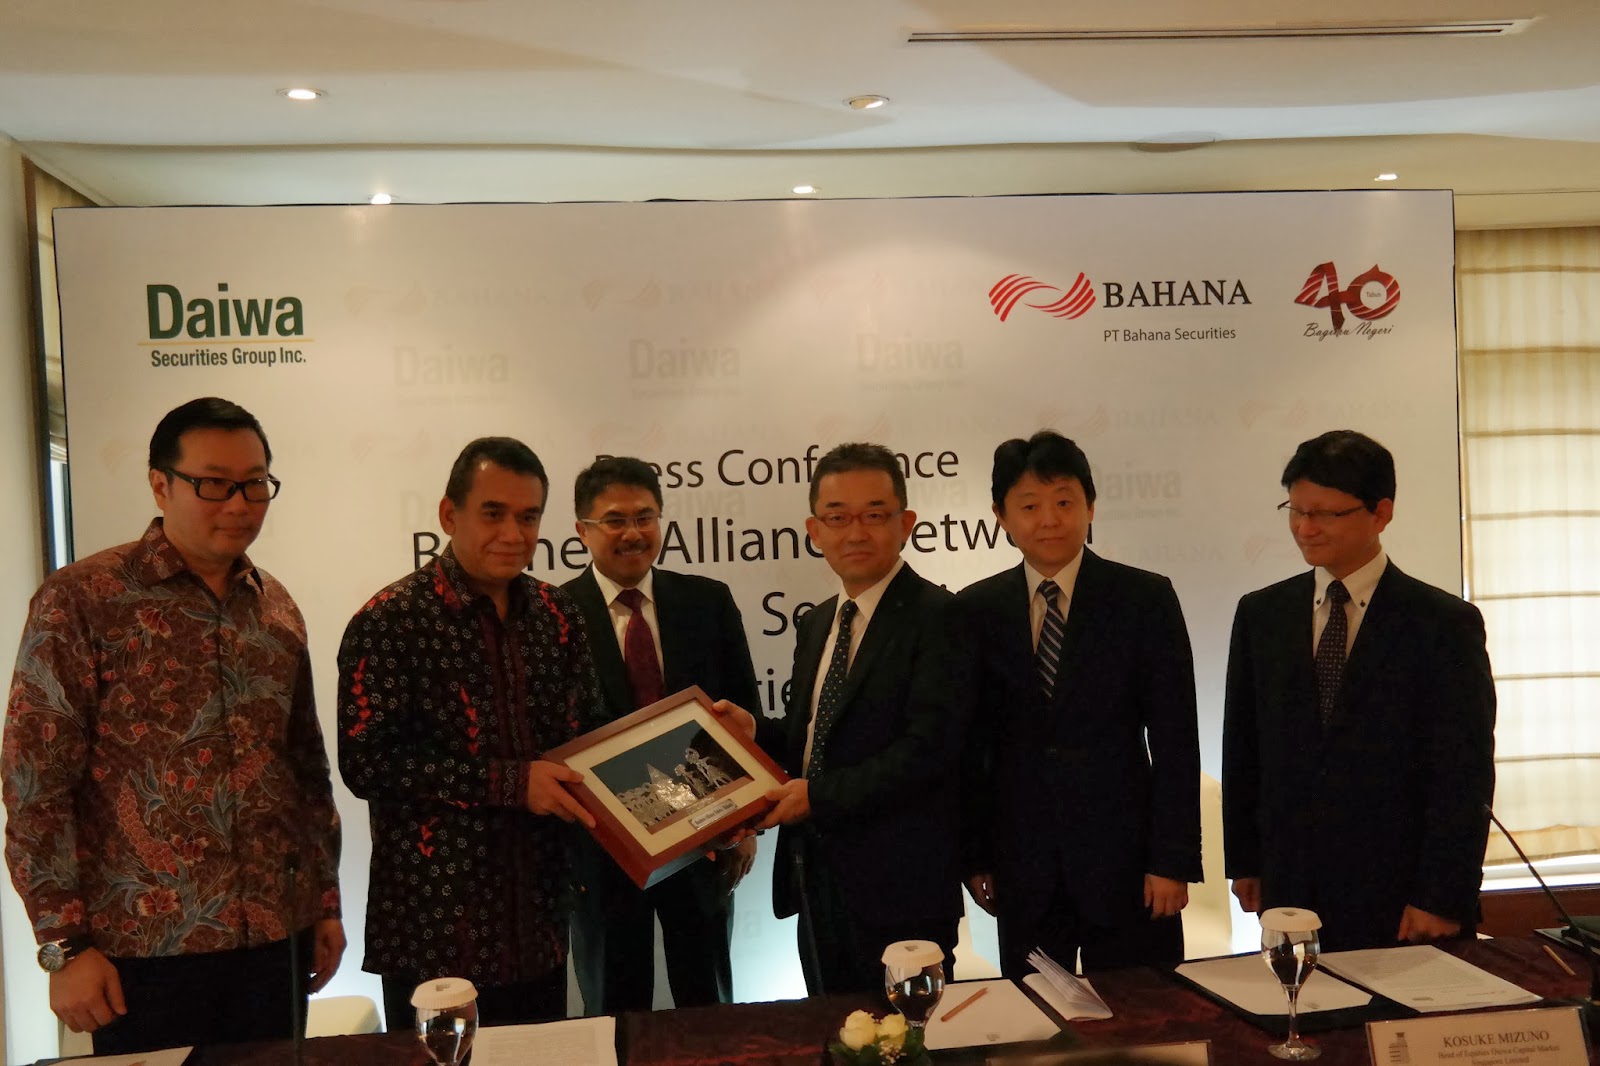 PANDA JAJAN: CAPITAL MARKET - Bahana Securities Signs for a Business  Alliance with Daiwa Securities